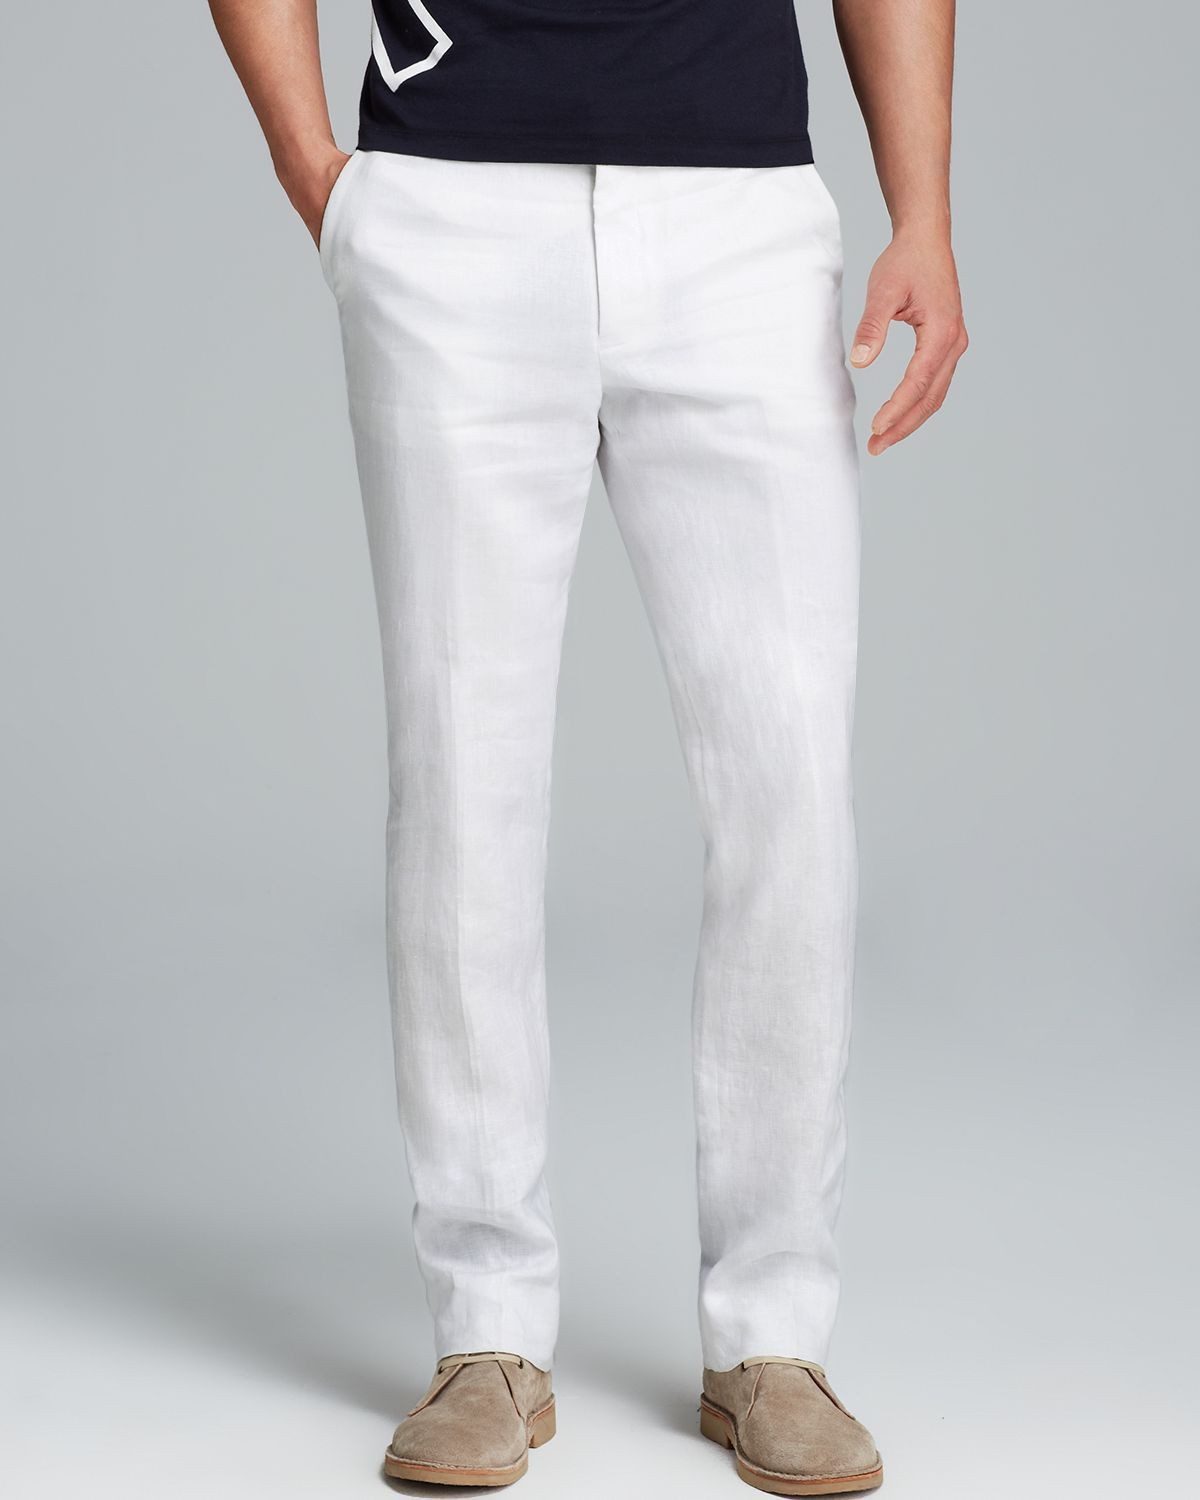 Lyst - Michael Kors Linen Modern Fit Pants in White for Men